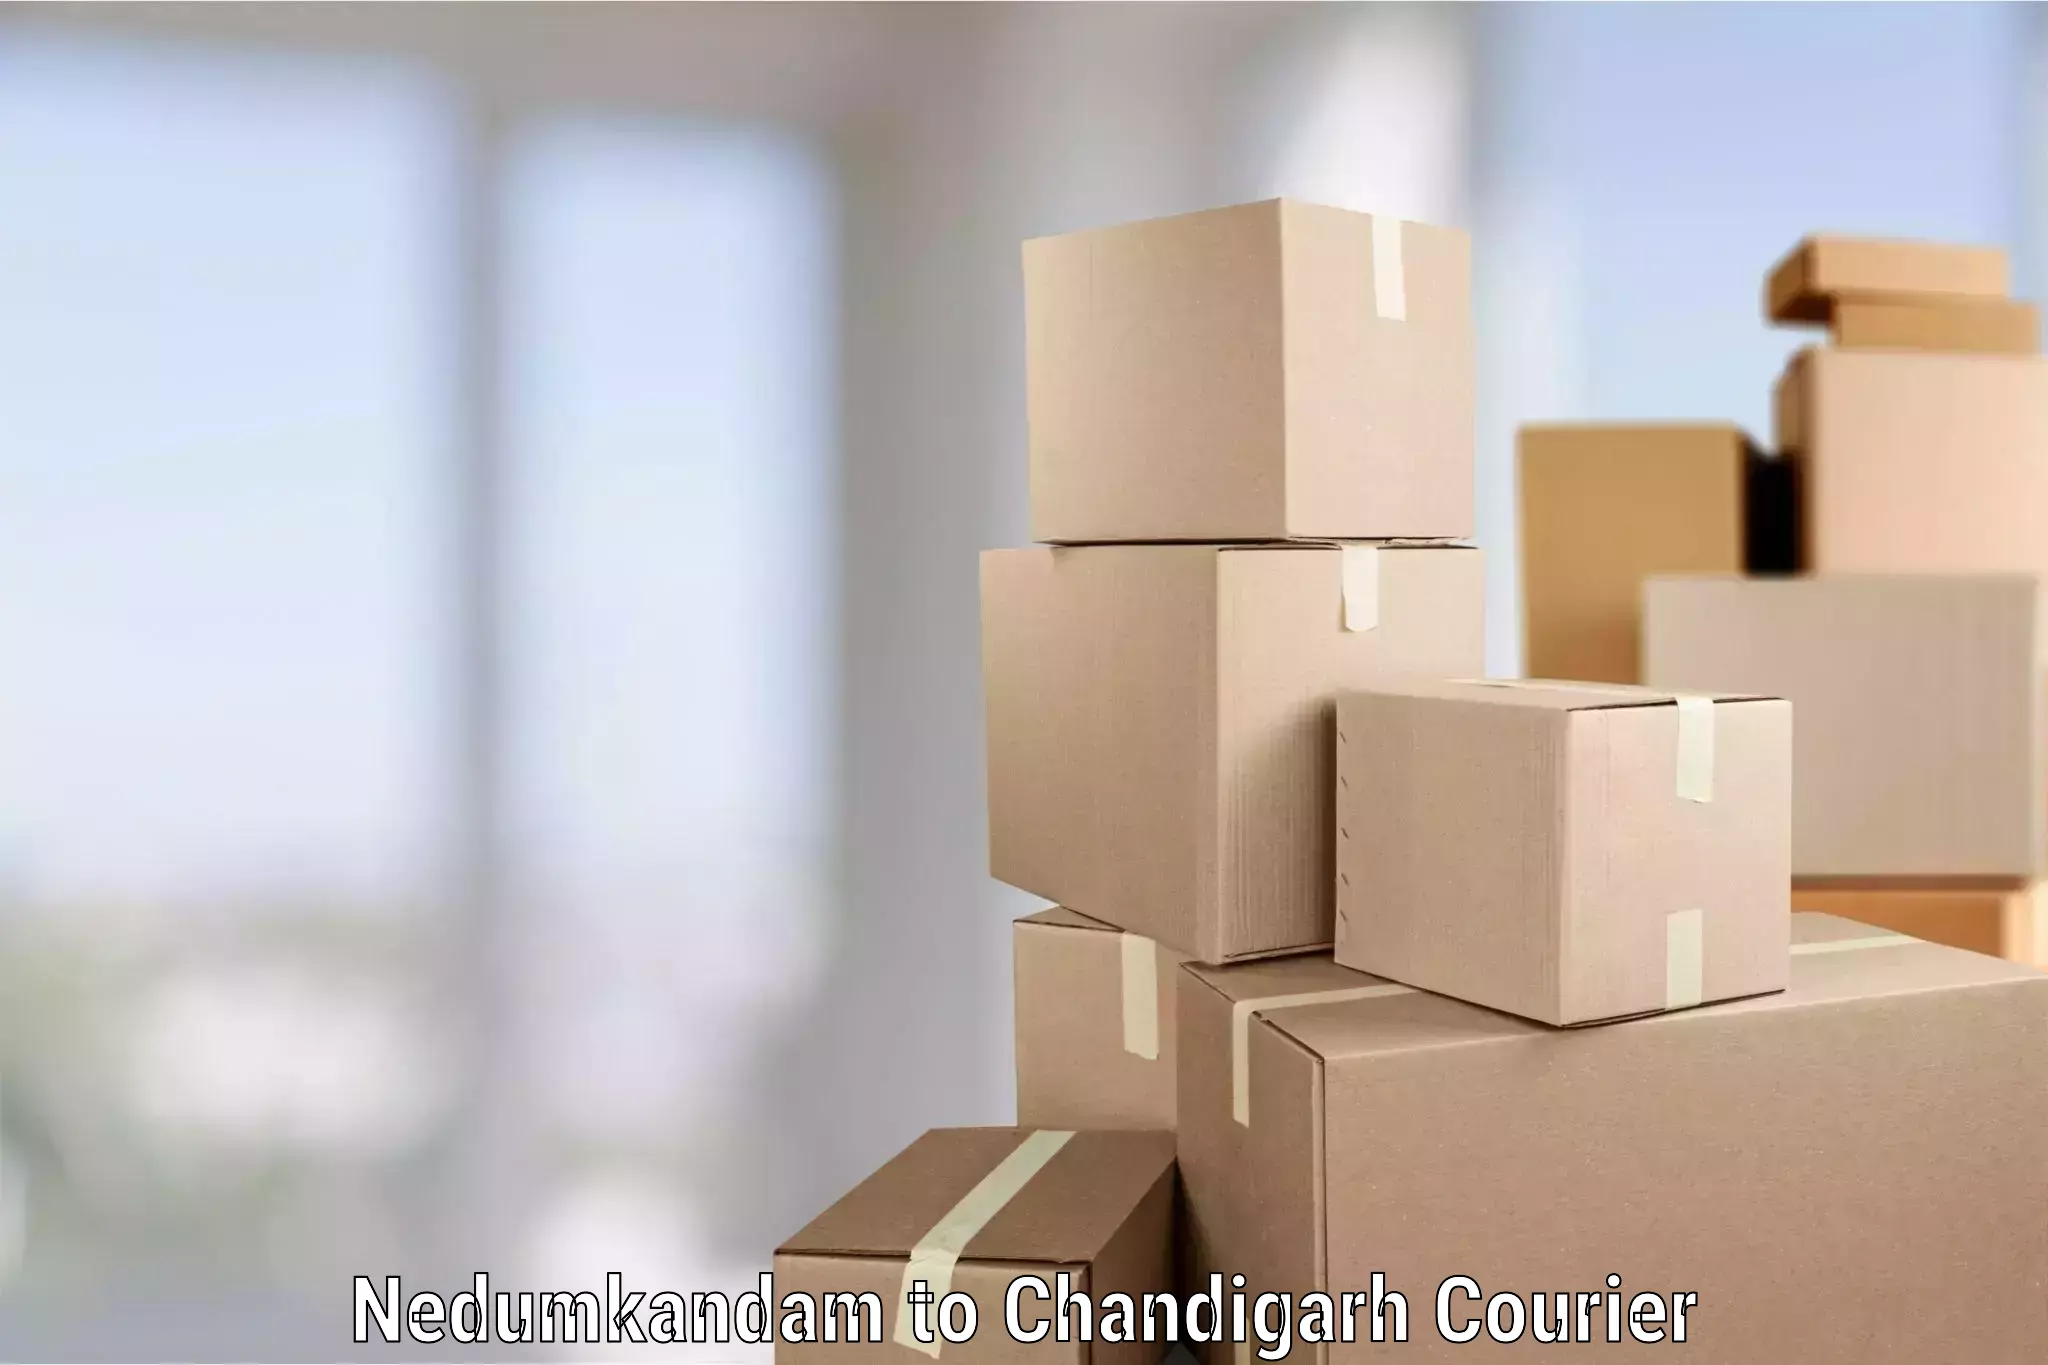 Professional movers Nedumkandam to Chandigarh